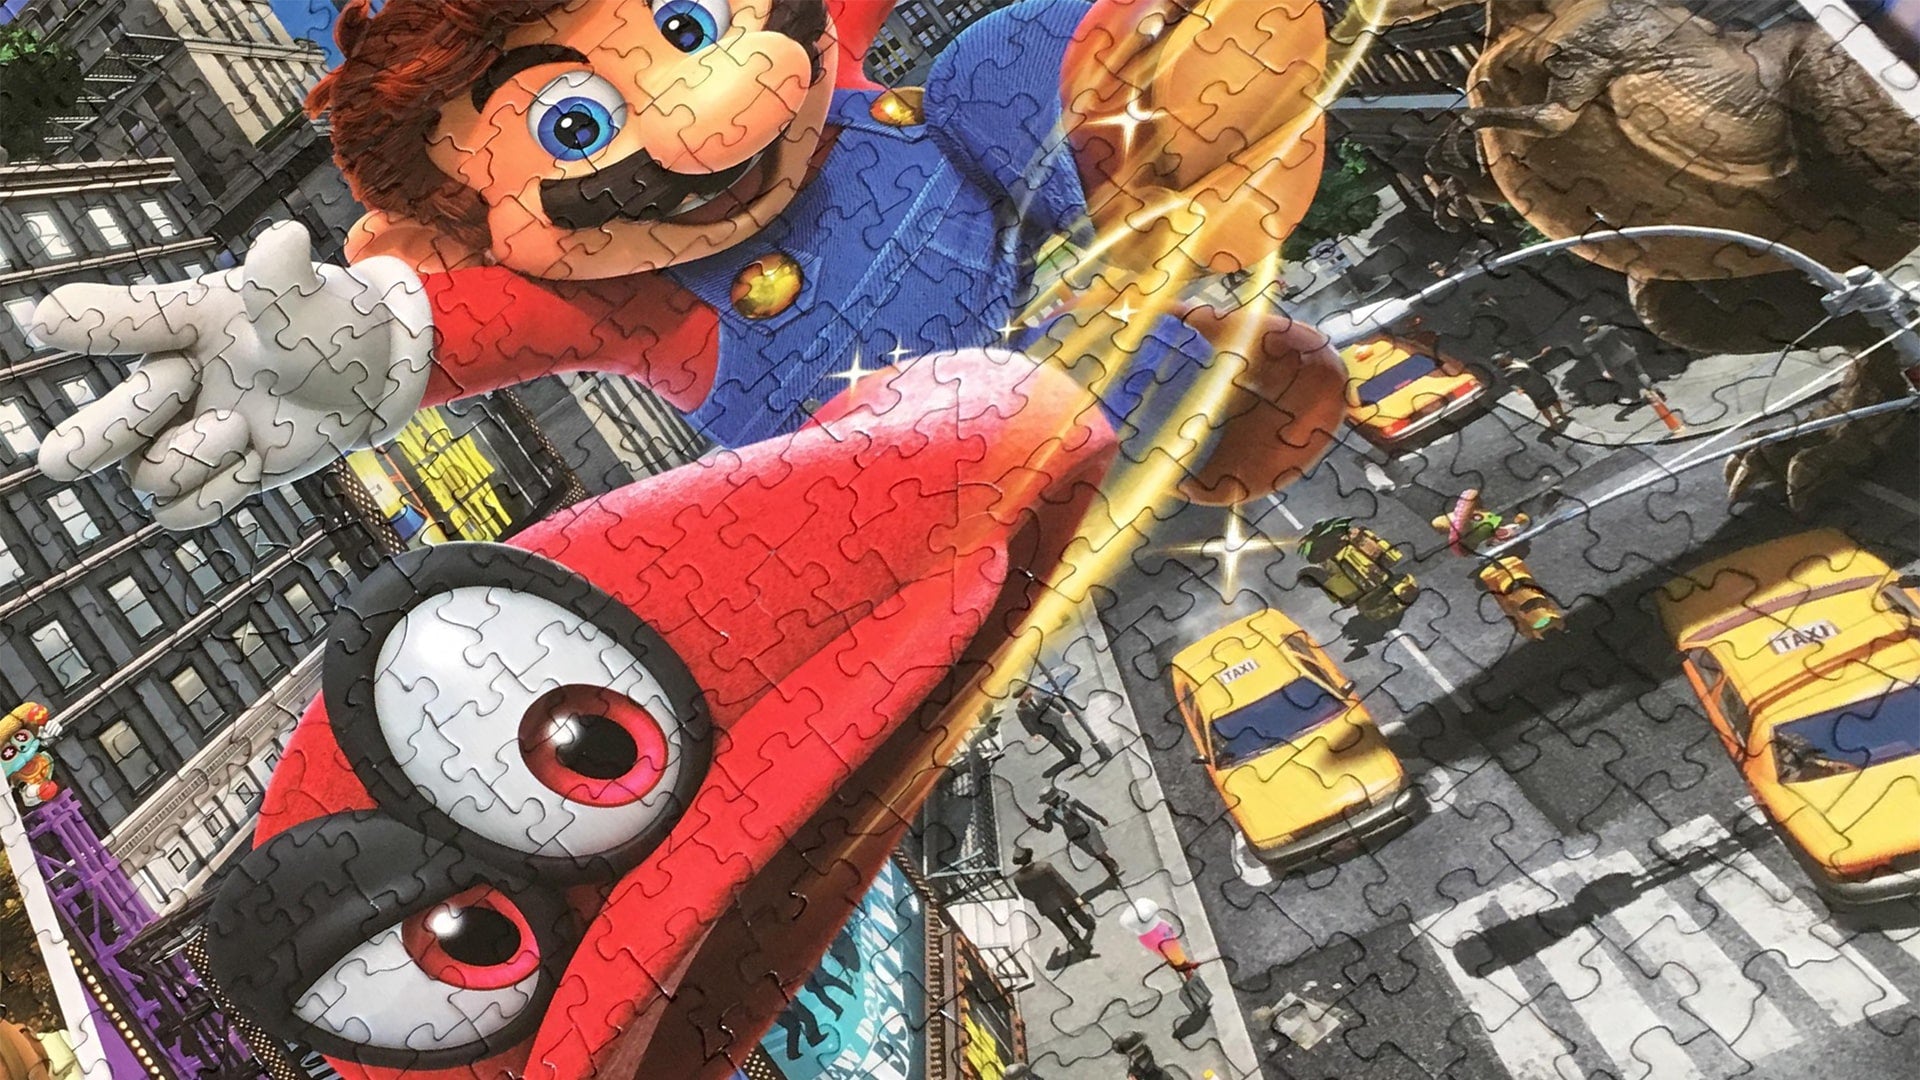 Super Mario Odyssey: Snapshots Puzzle